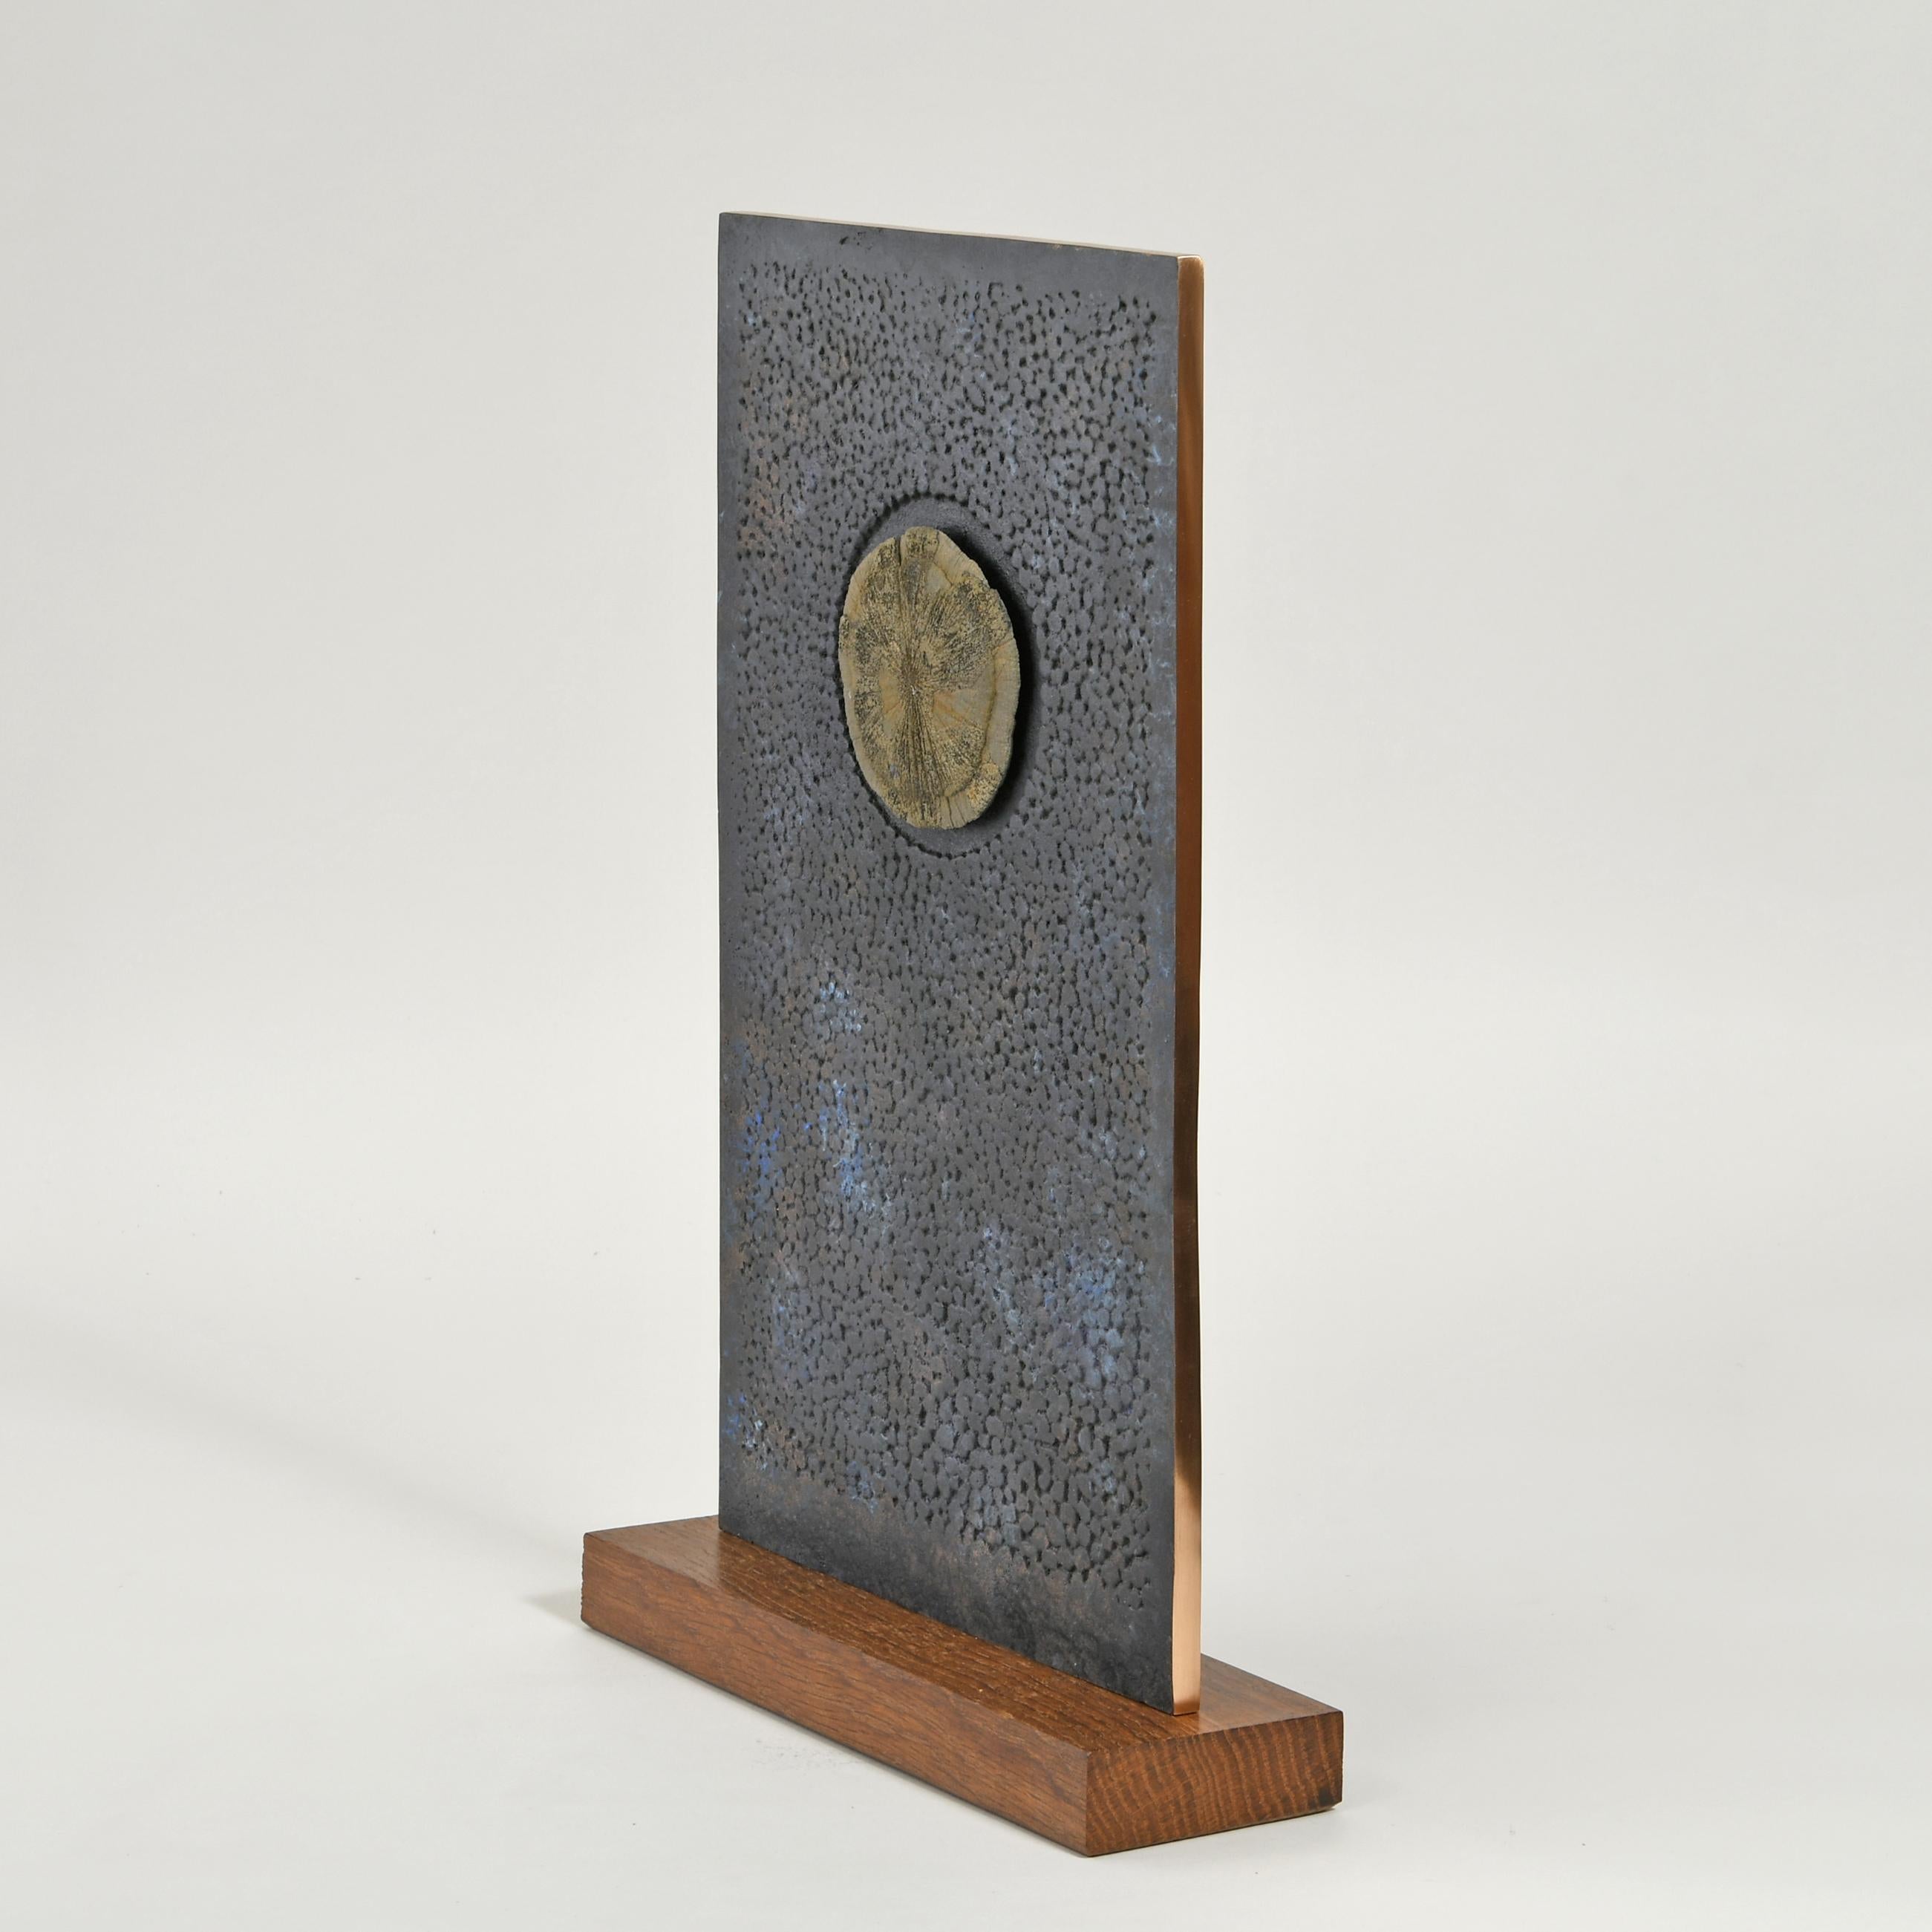 40 hoch x 23 x 8 cm
Bronze mit Ferriteinschlüssen auf einem Eichenholzsockel
Gestempelt mit Monogrammsignatur und eindeutiger Nummerierung 501C
Serie einzigartiger Einschlussvarianten.
Die Vorderseite mit strukturierter Oberfläche hat eine